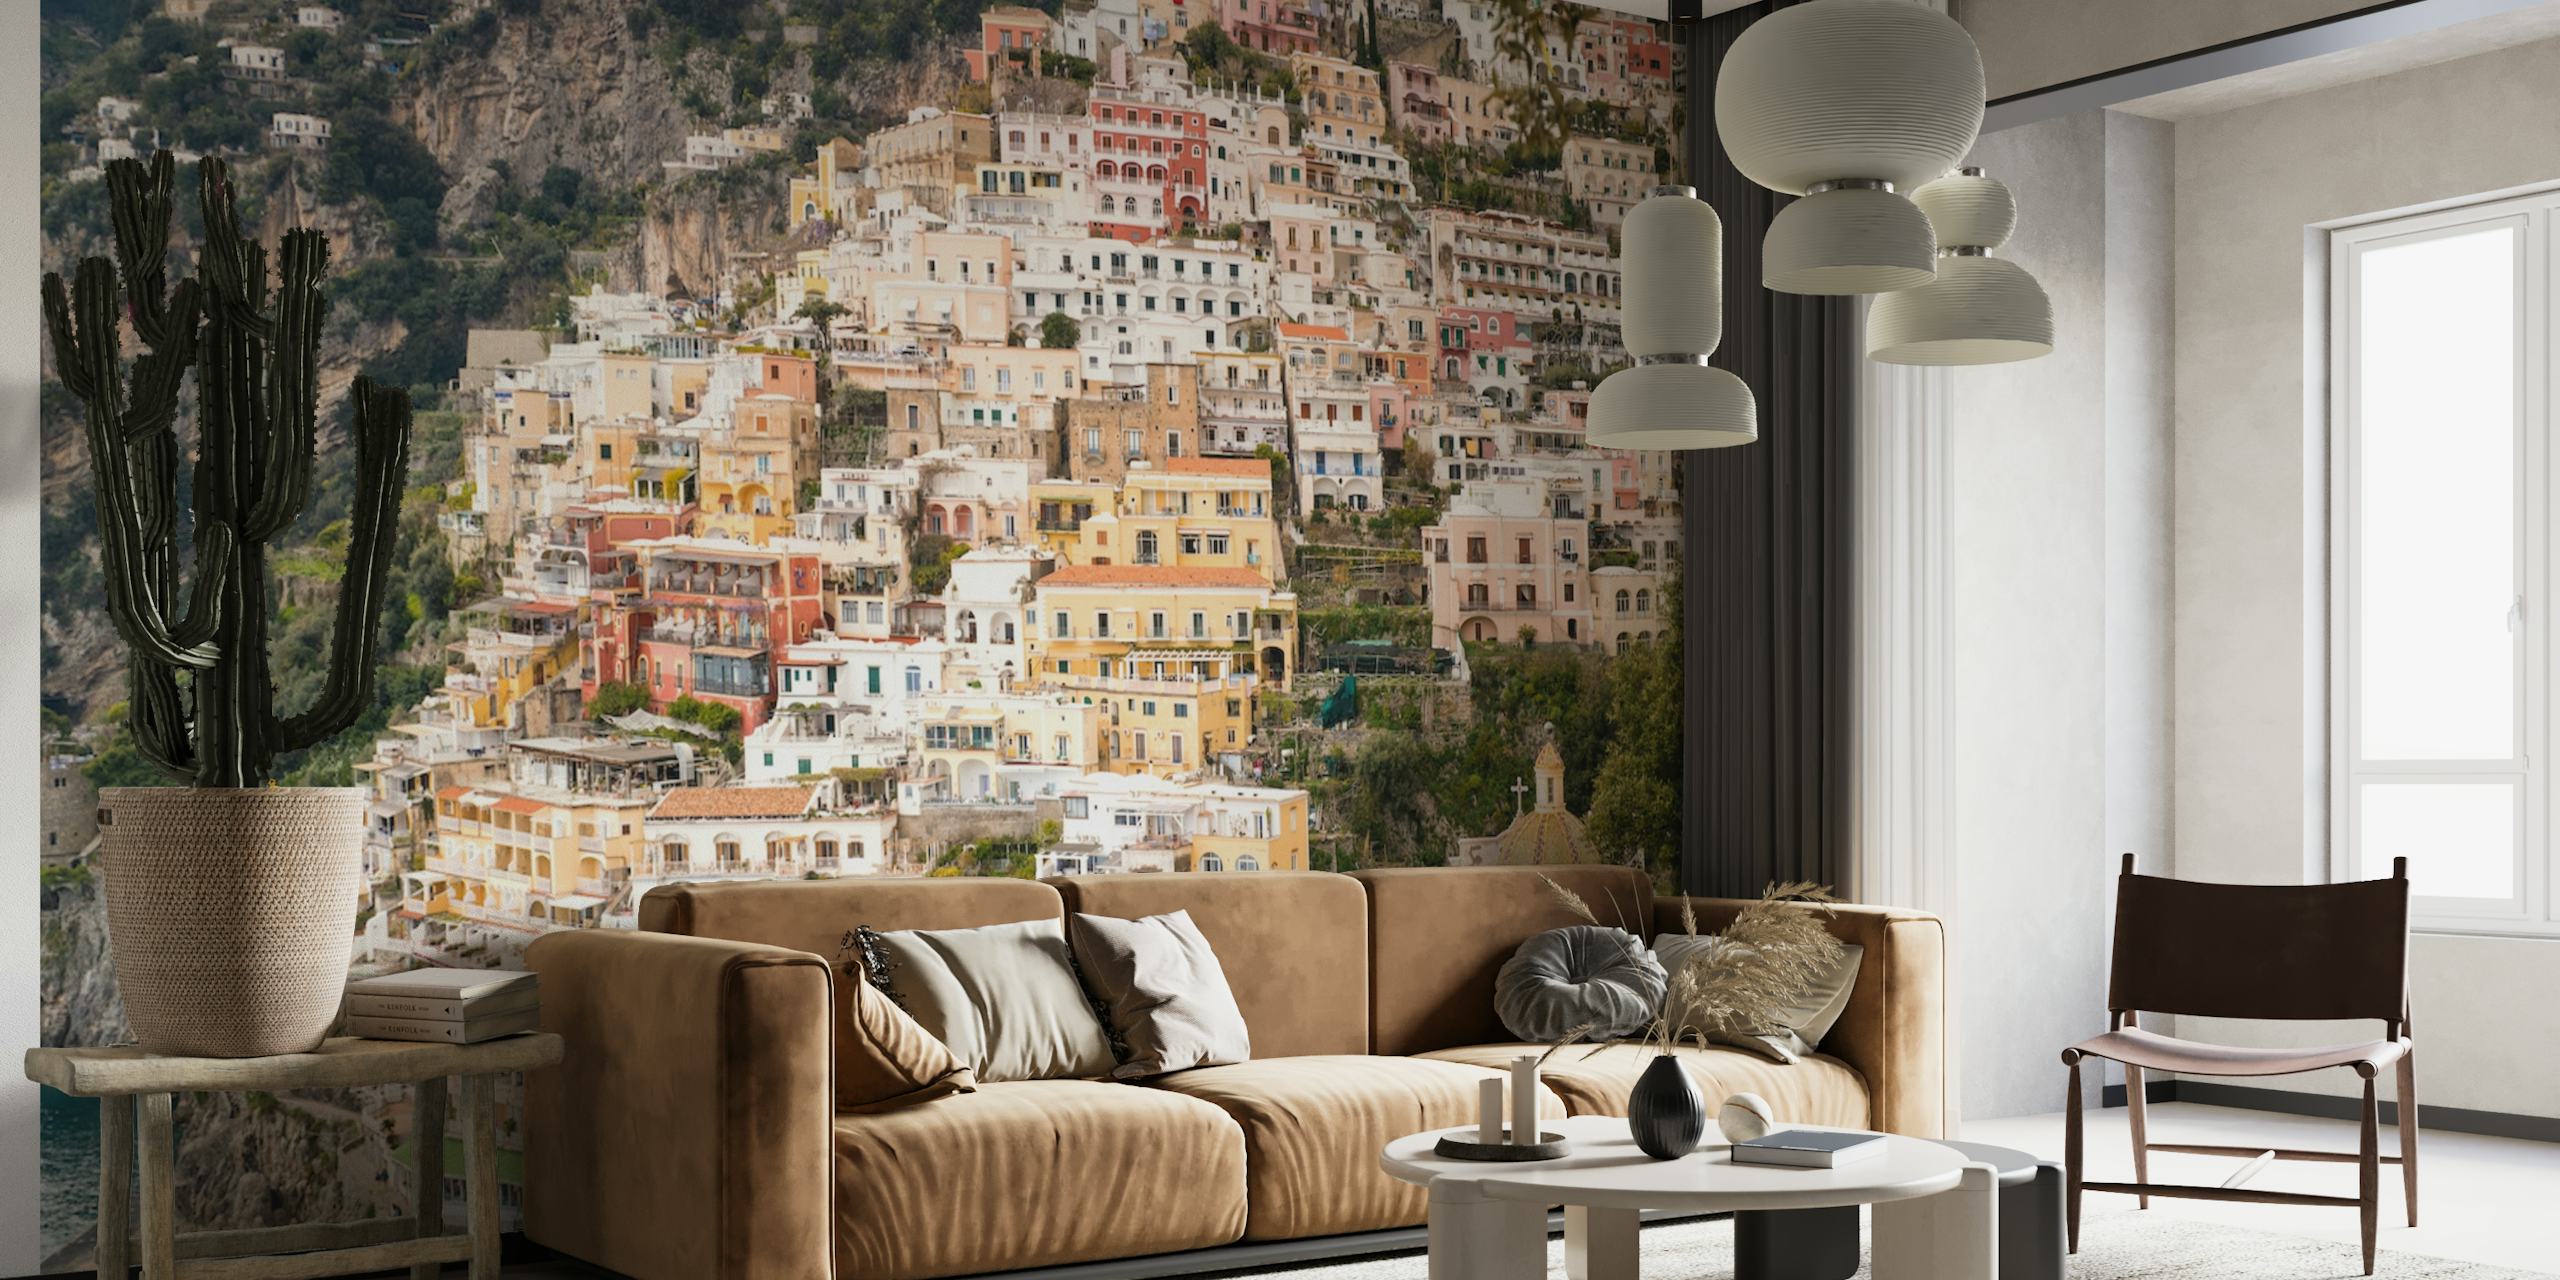 Positano Amalfin rannikon seinämaalaus, jossa on värikkäitä rakennuksia ja välimerellistä tunnelmaa